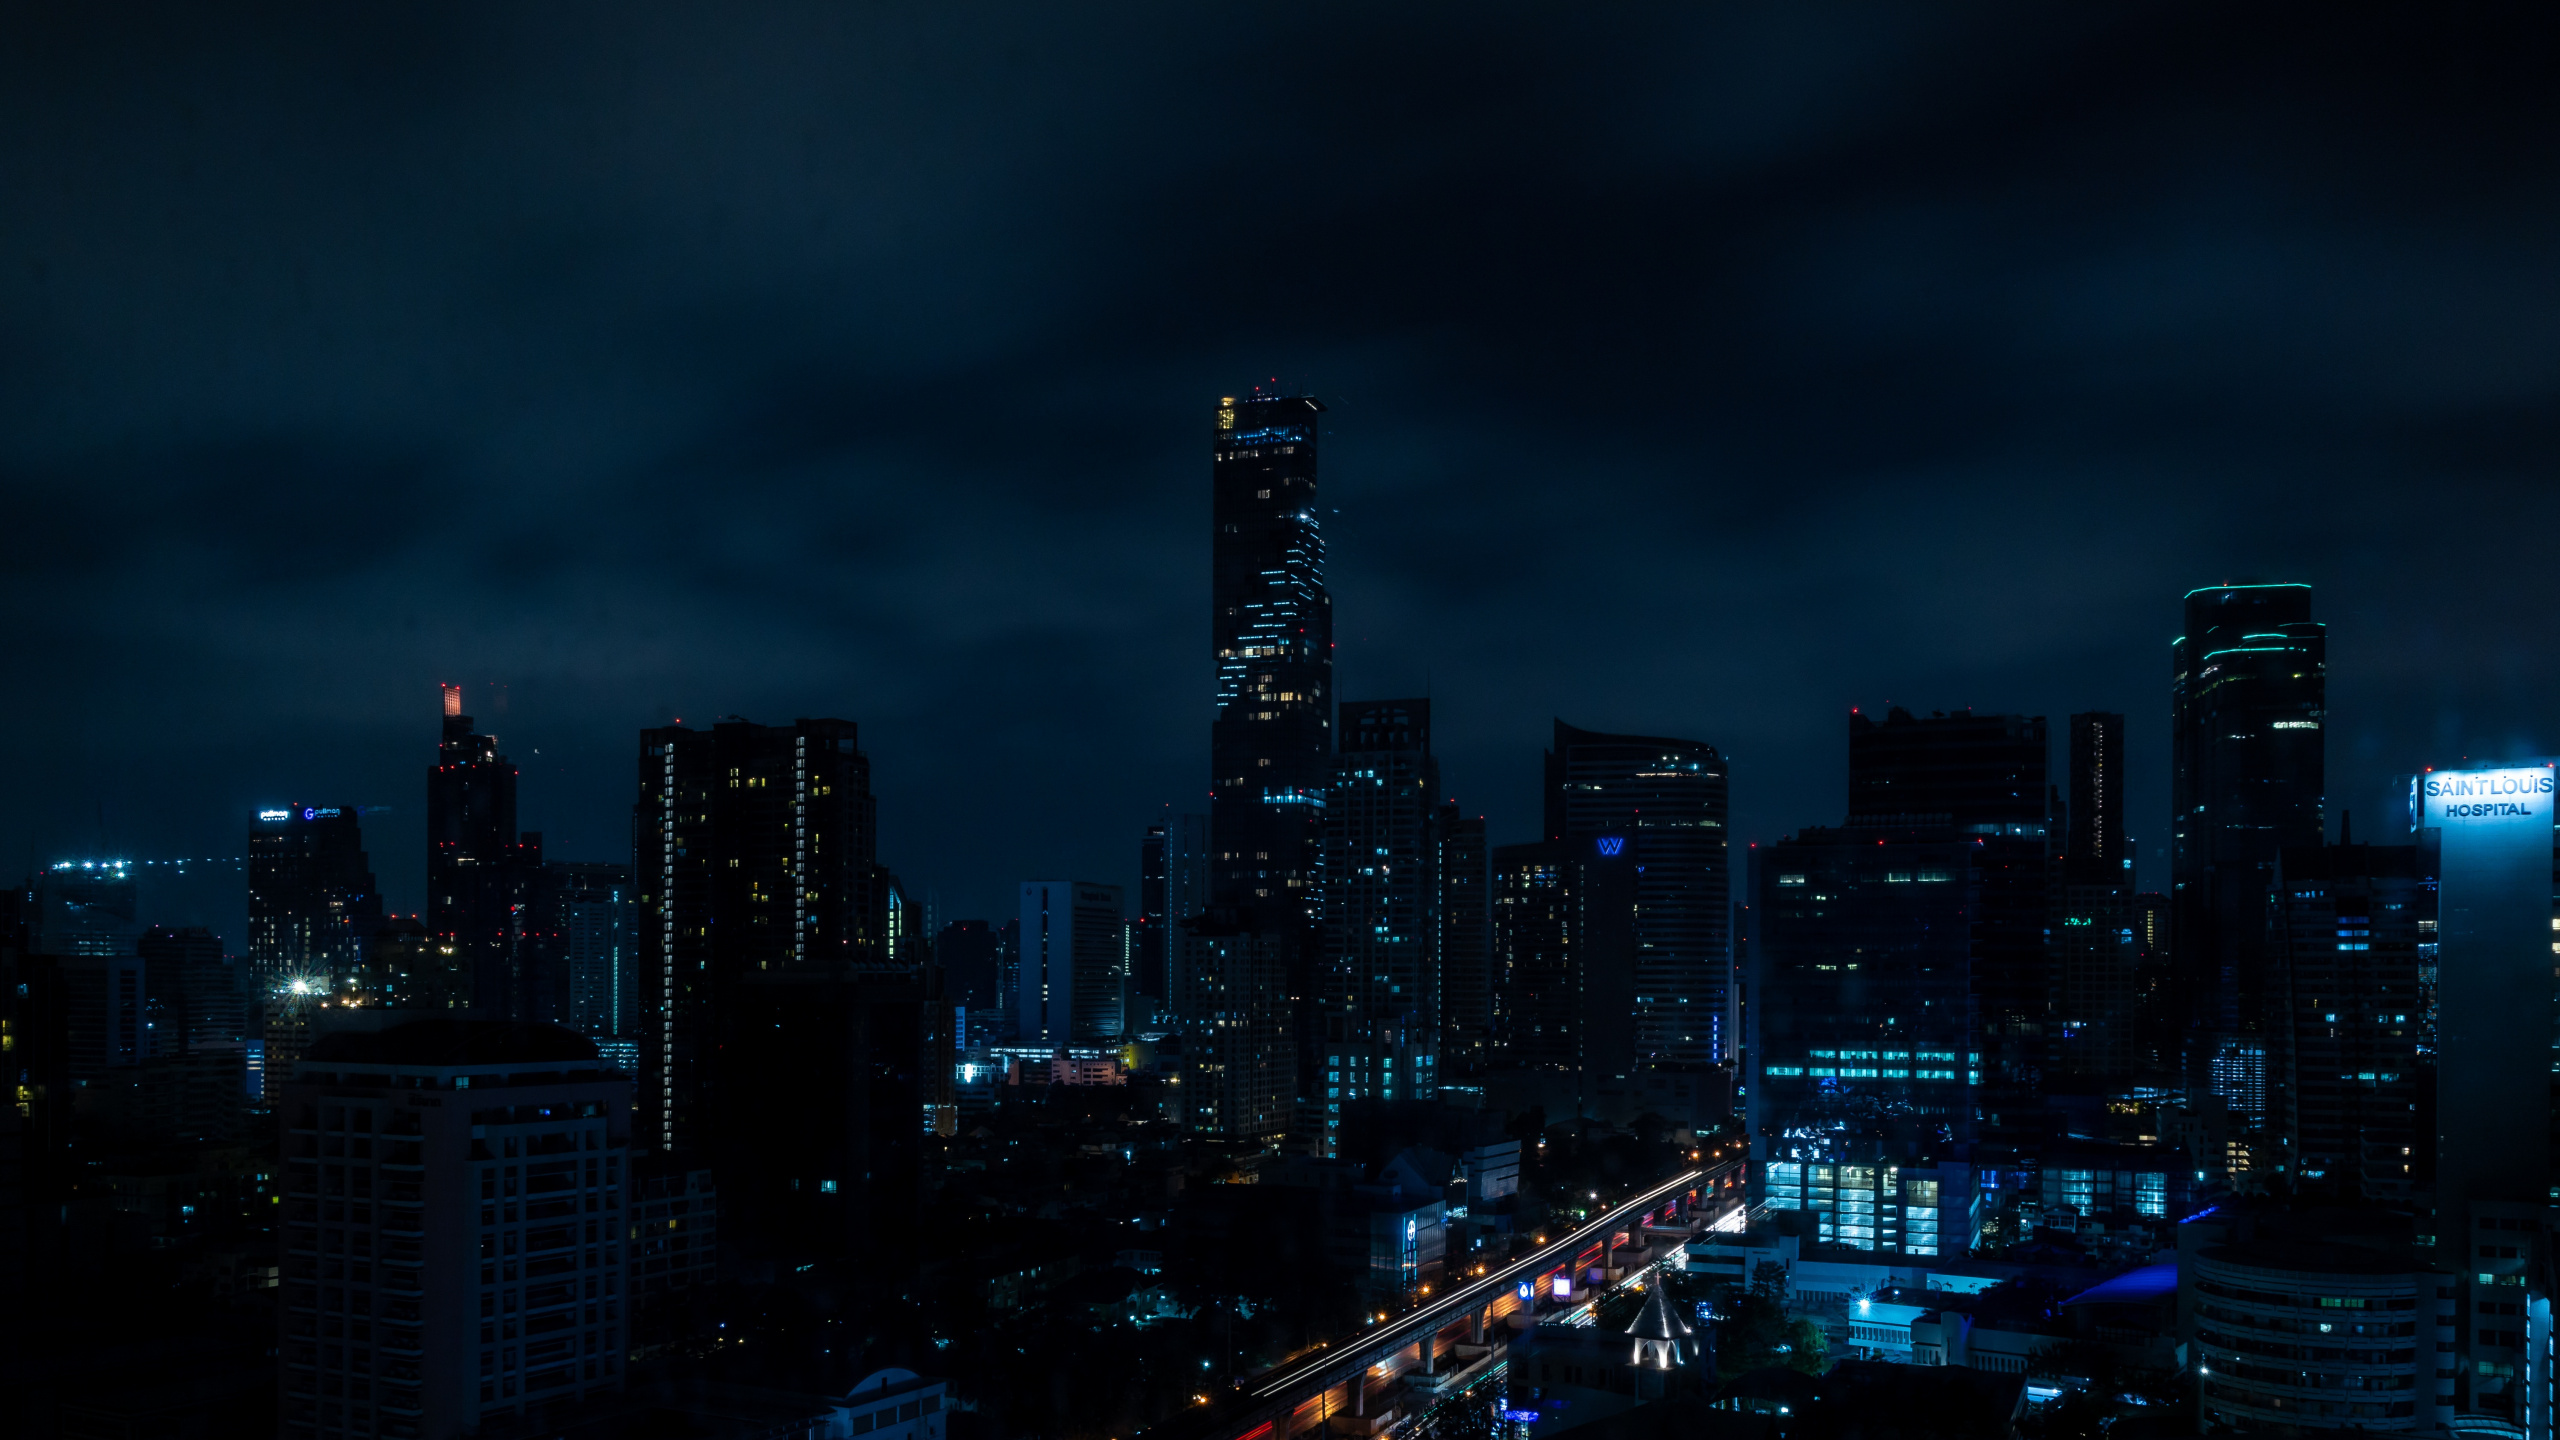 Skyline Der Stadt Bei Nacht Night. Wallpaper in 2560x1440 Resolution